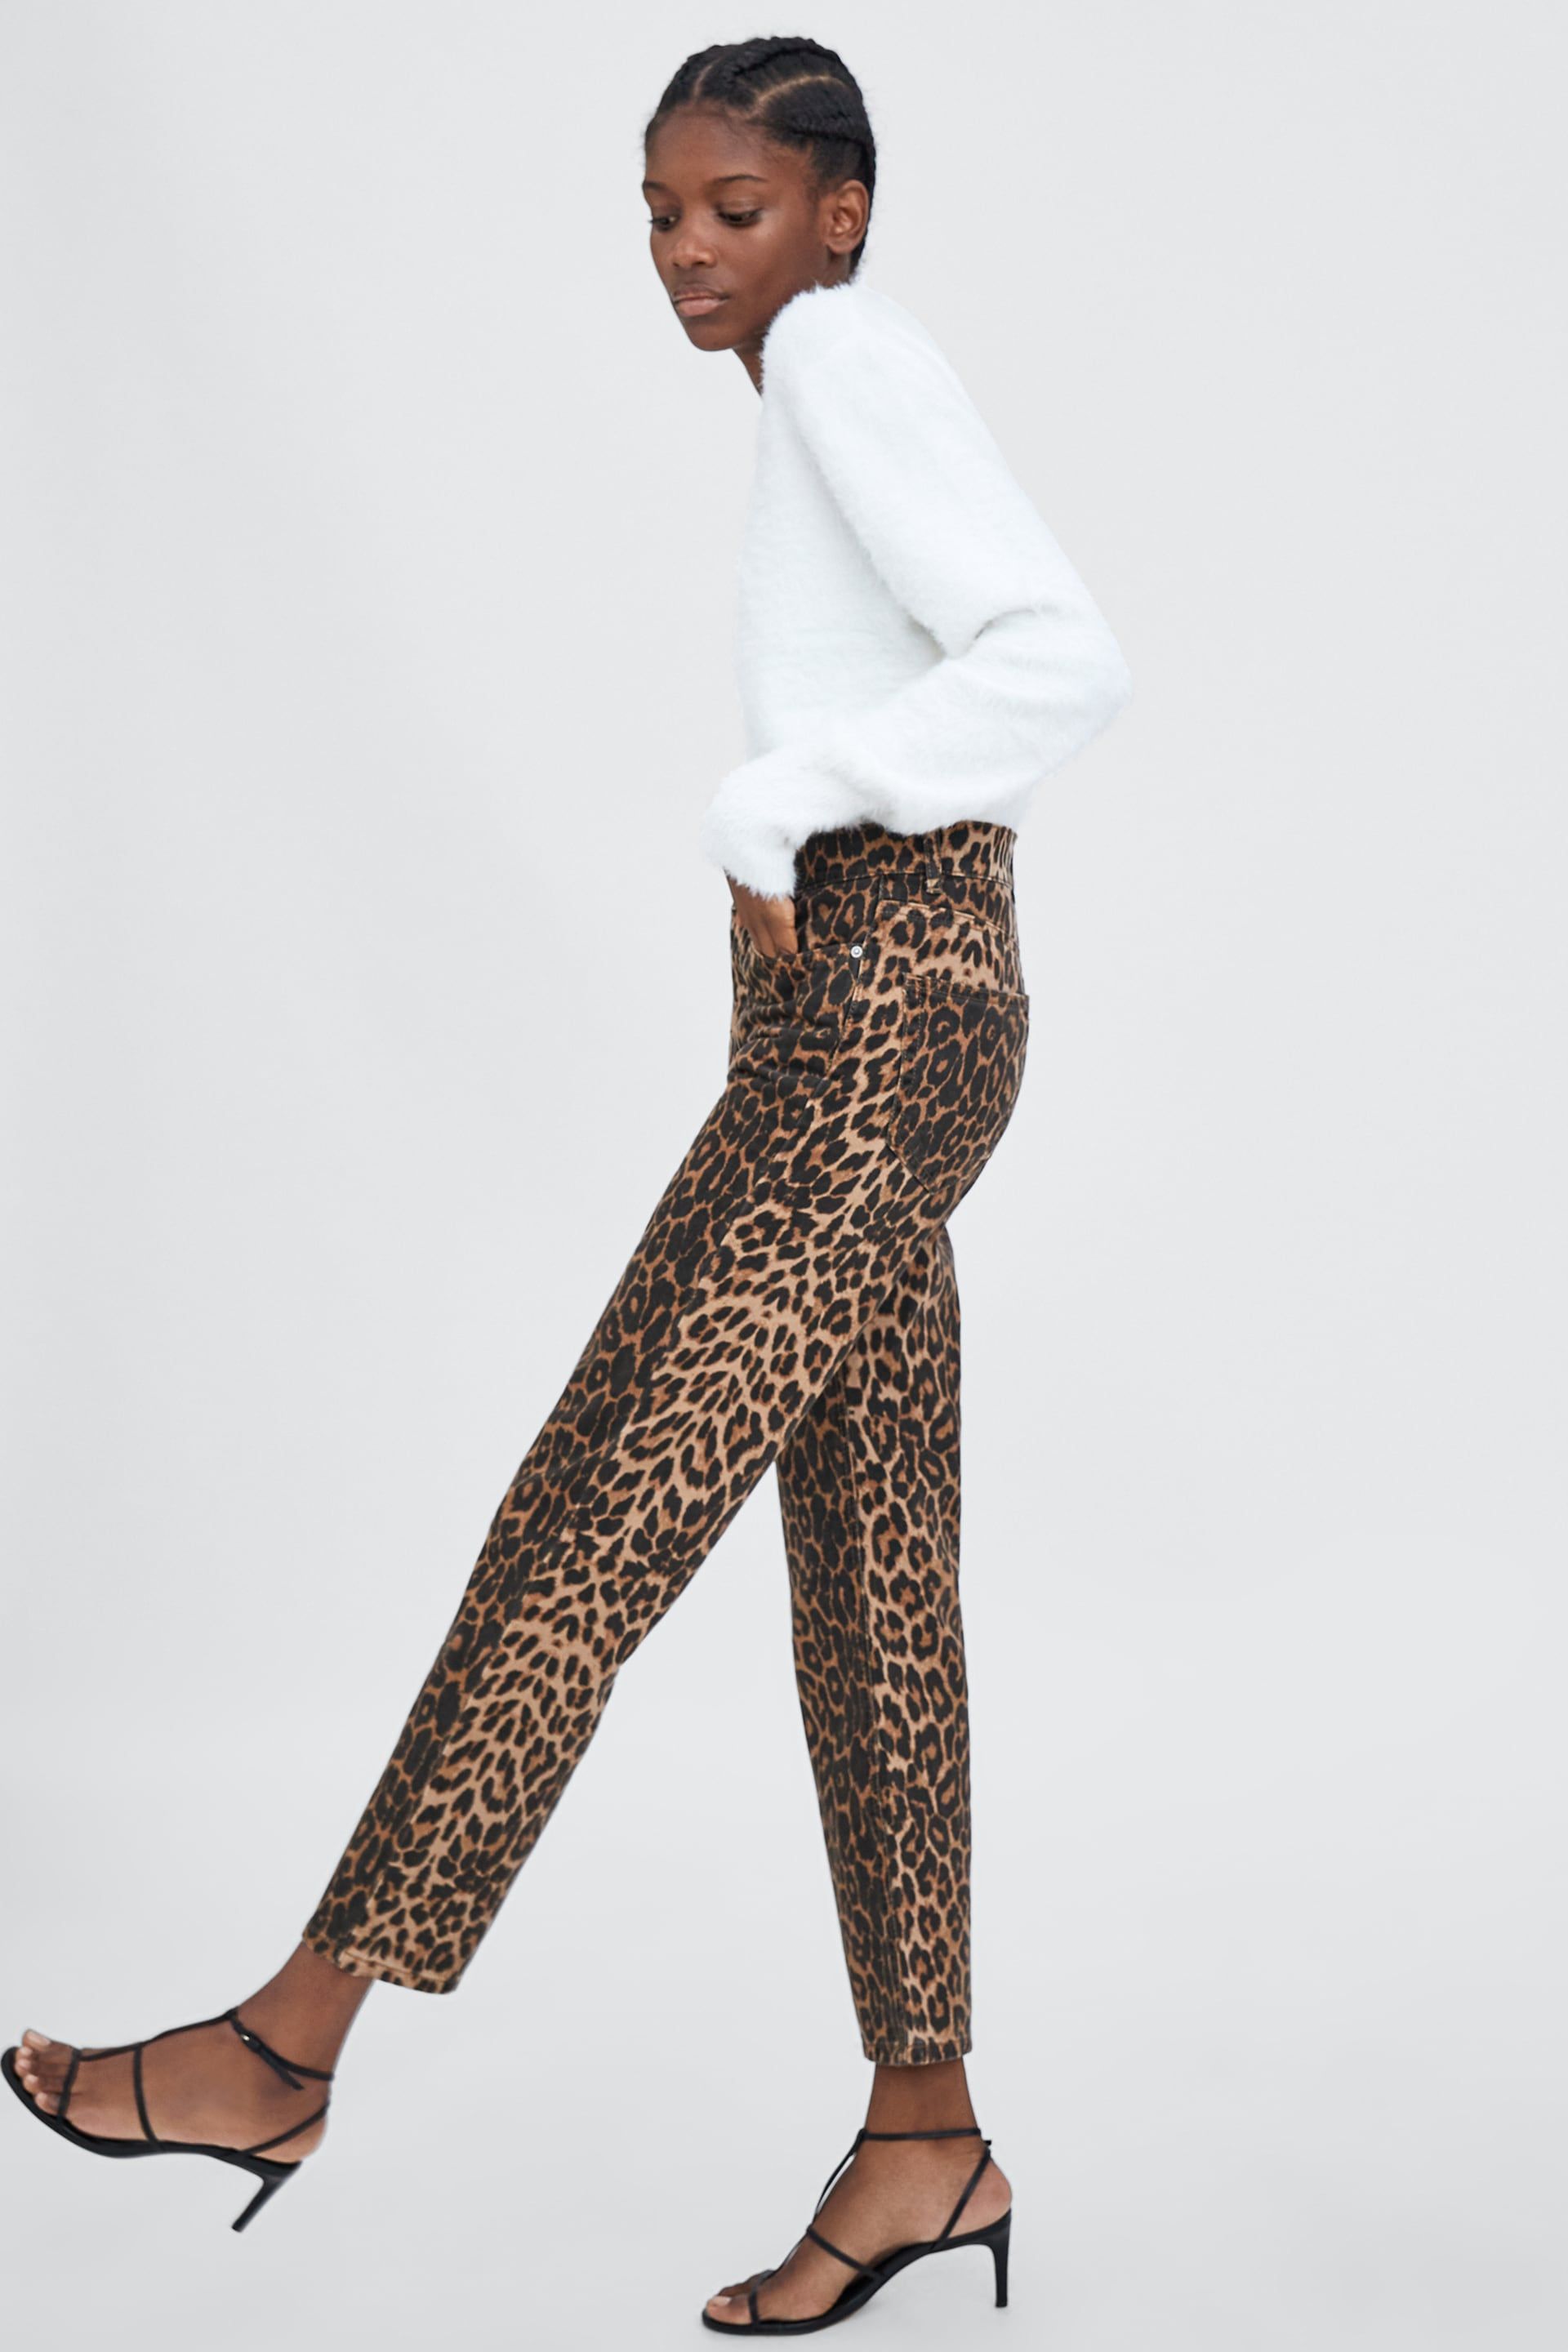 Pantalones leopardo Zara - Estos pantalones son más vendidos de